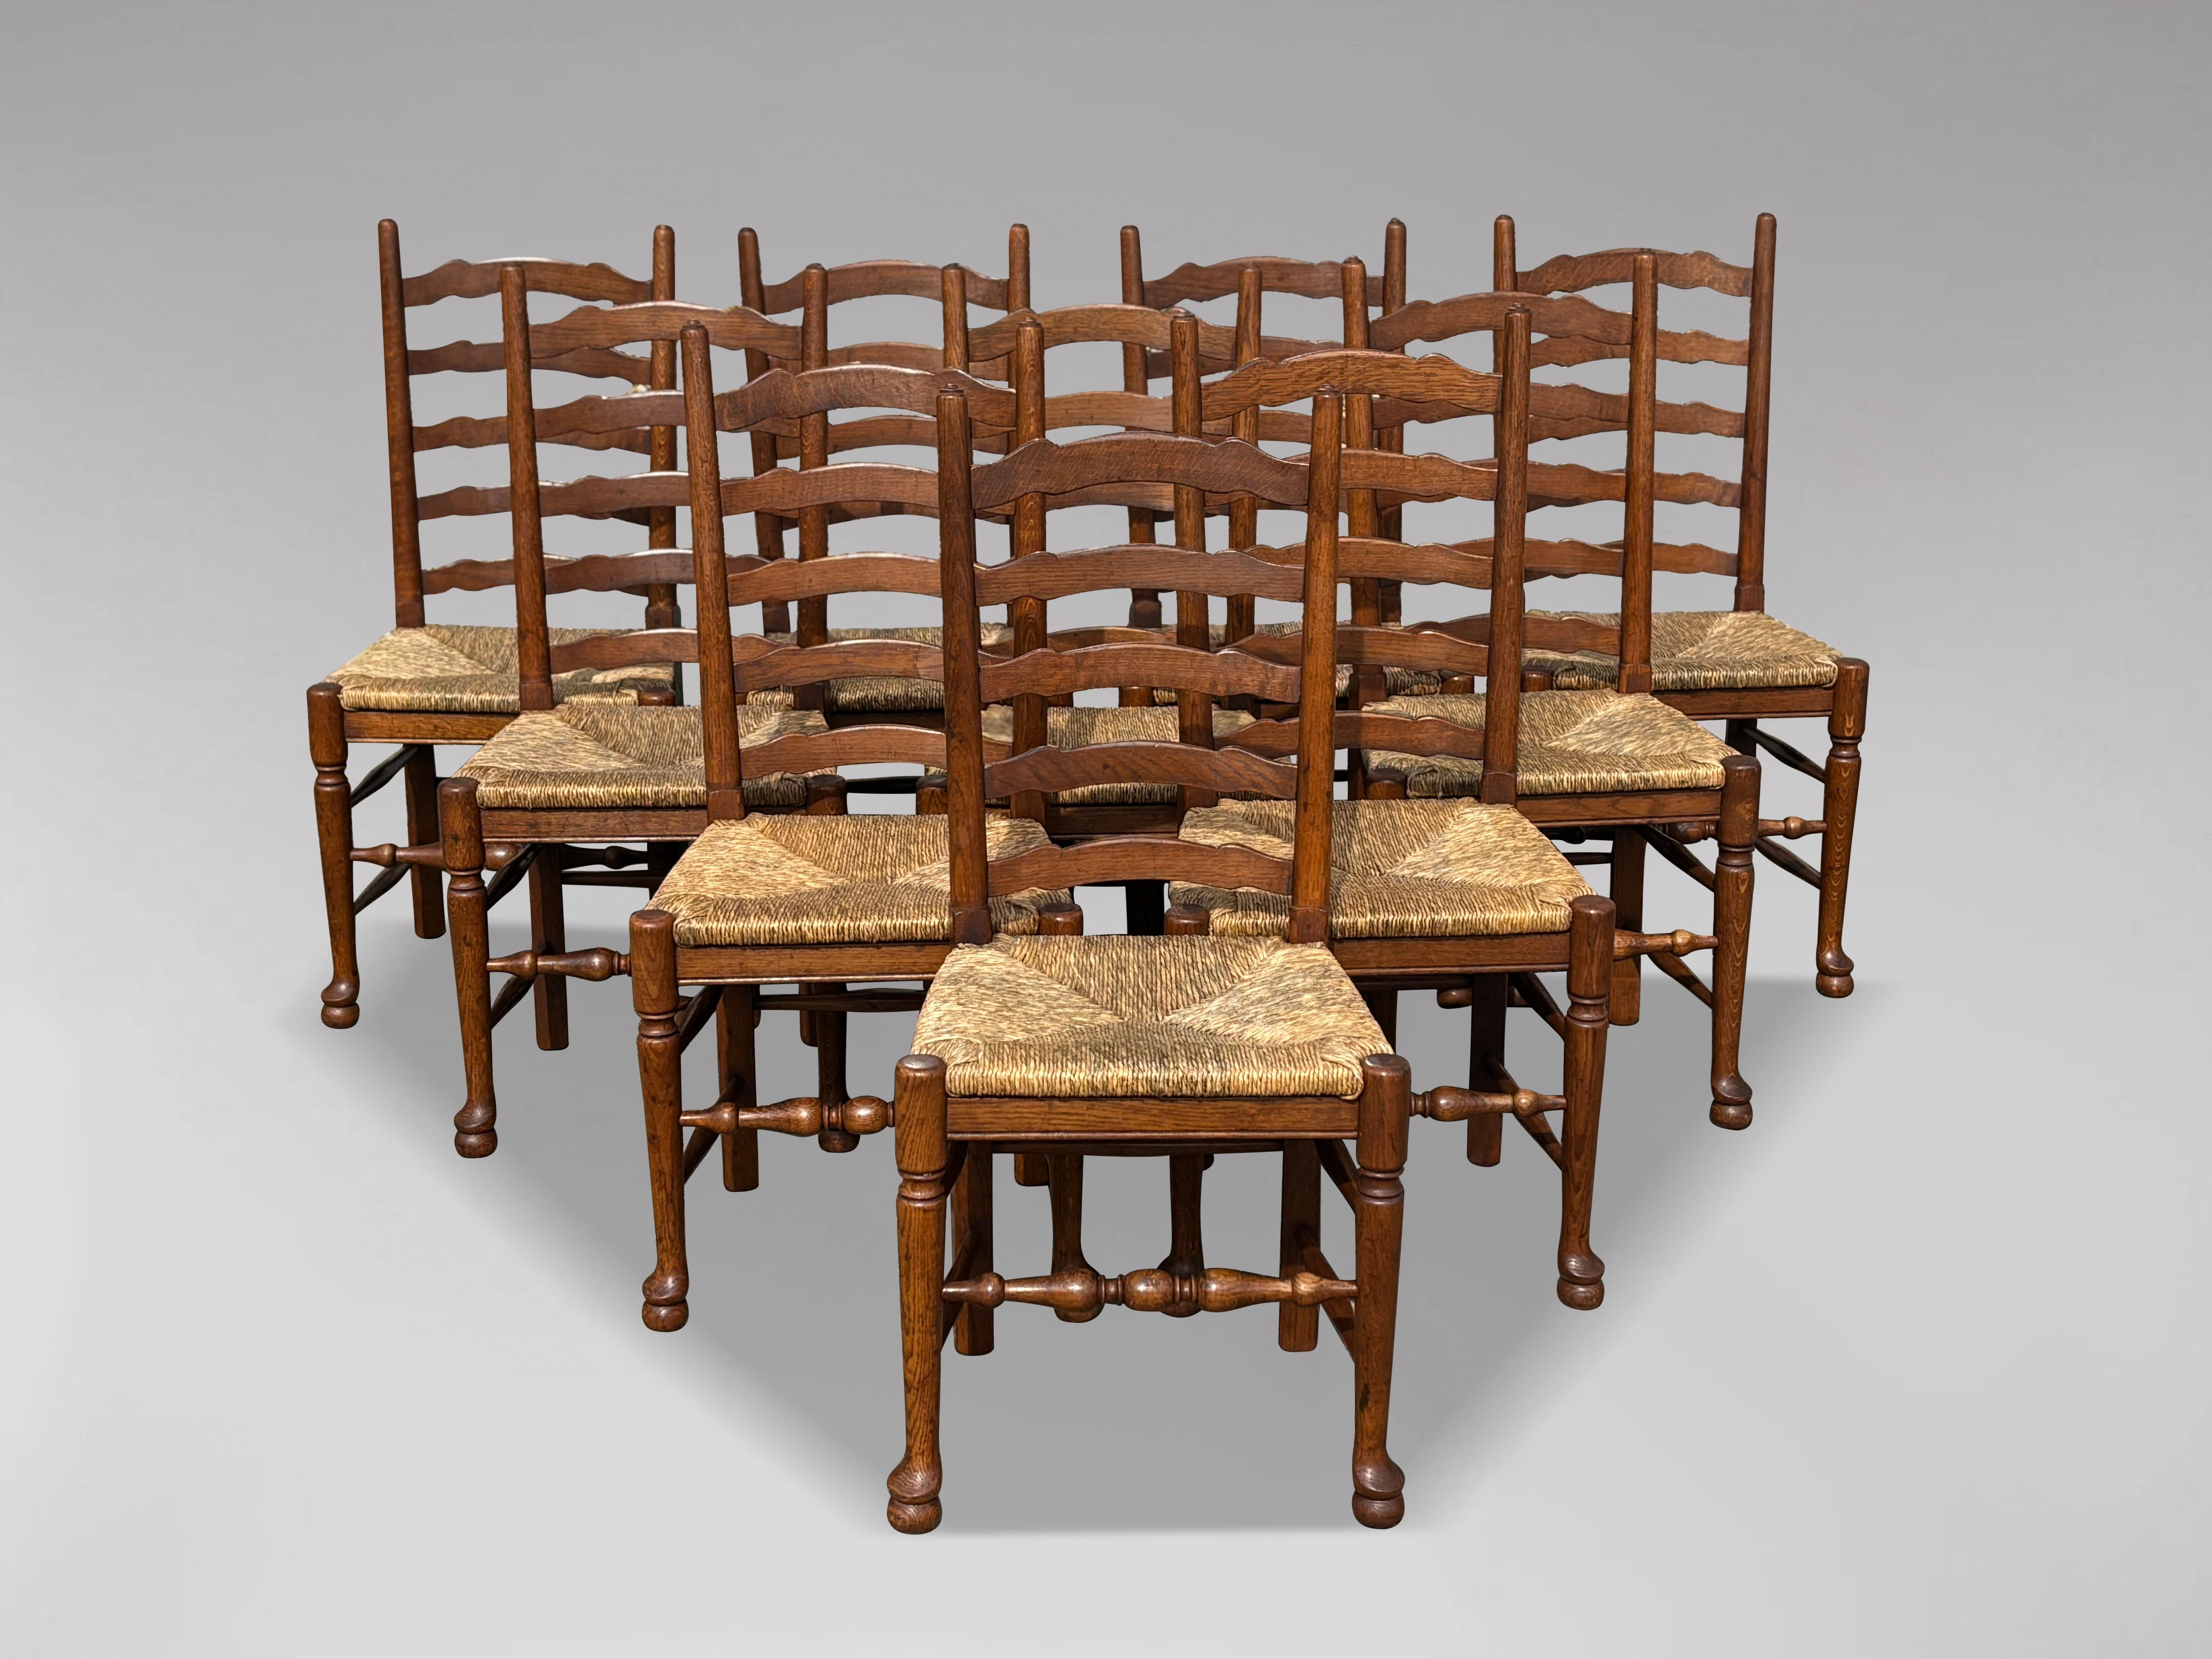 Ensemble assorti de 10 chaises de salle à manger en chêne massif Lancashire à dossier en échelle et à assise en jonc, de style géorgien. Toutes ces pièces sont en très bon état et semblent avoir été fabriquées au début du 20e siècle. Ces magnifiques